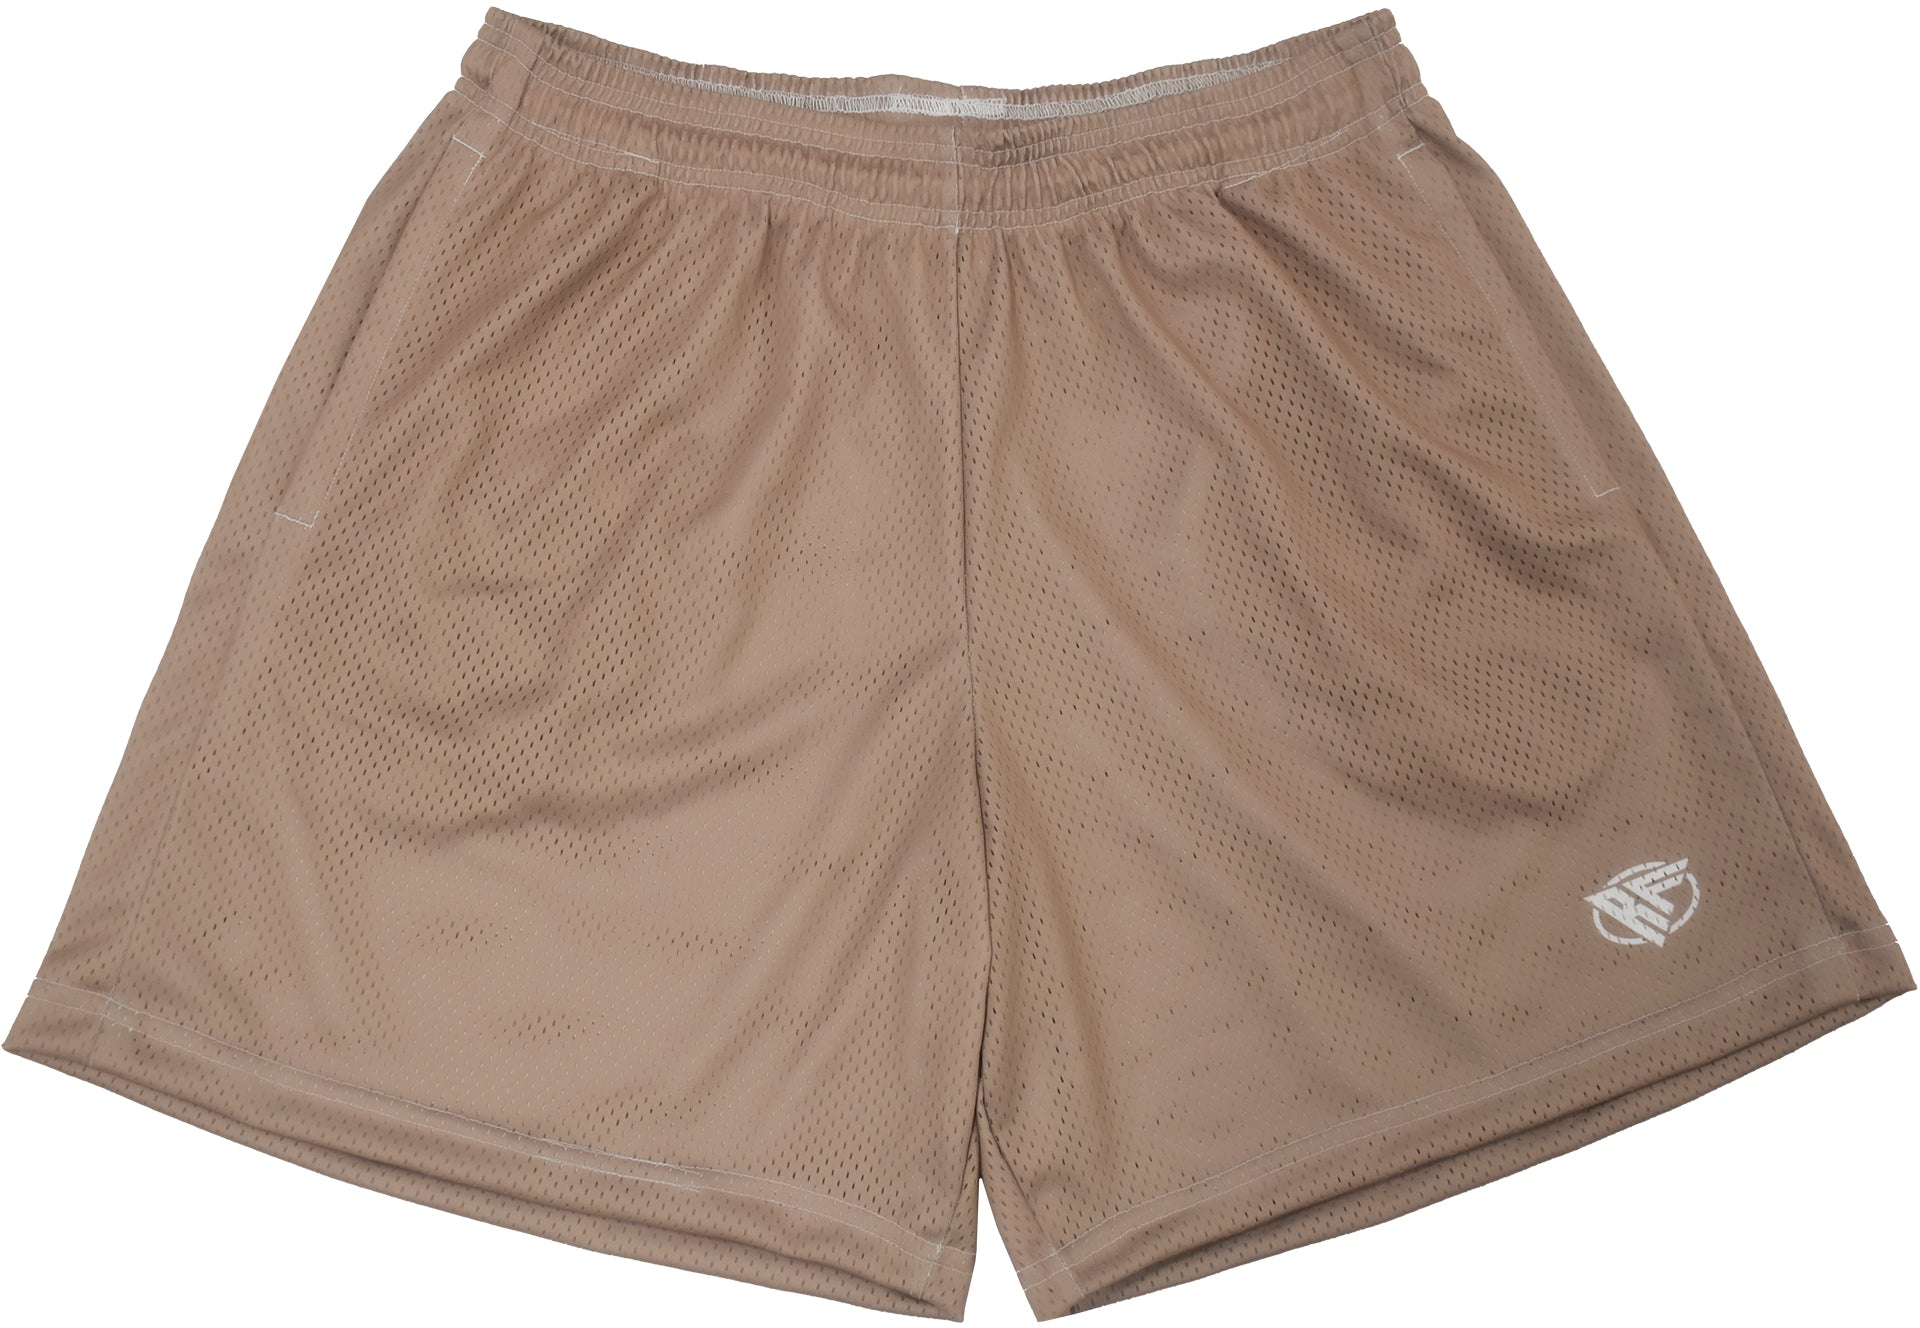 RF Mesh Basic Shorts - Tan - RFwear